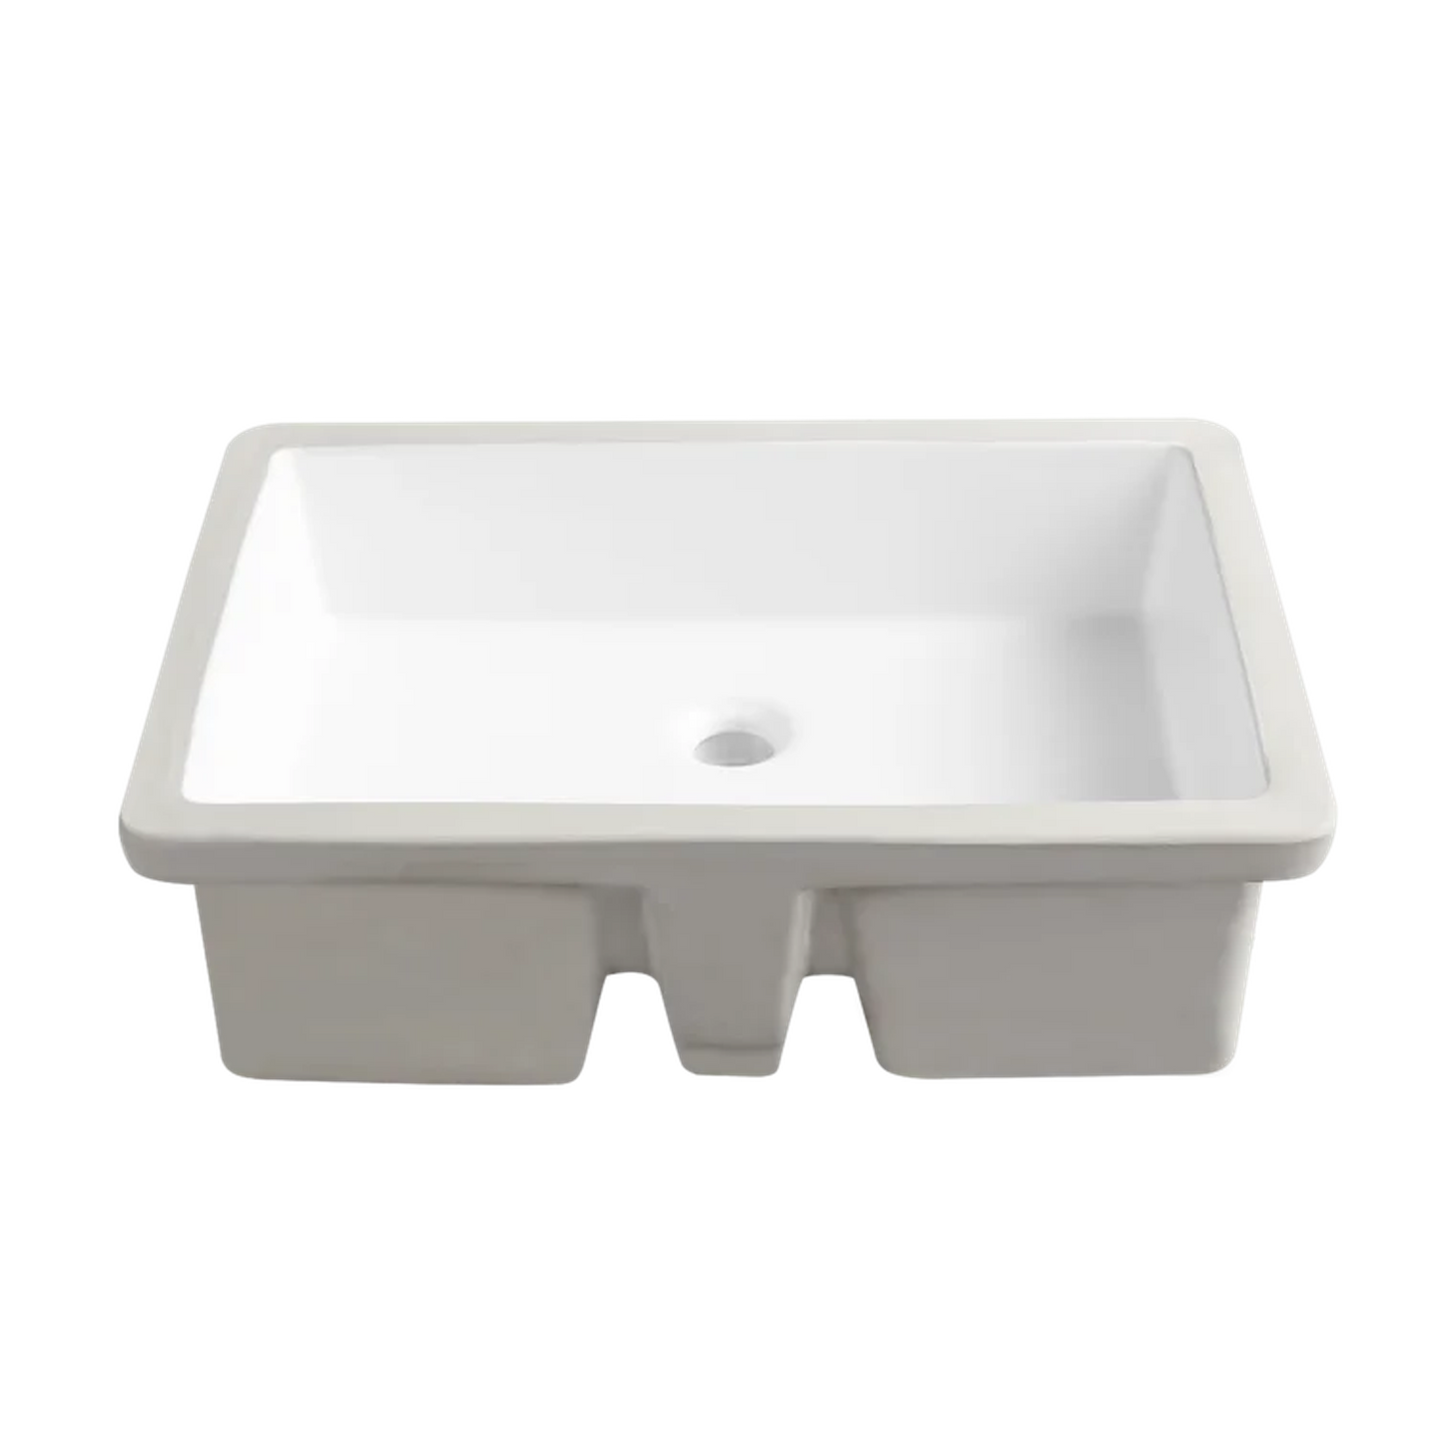 DeerValley Ursa 22" x 16" Rectangular White Undermount Bathroom Sink With Overflow Hole